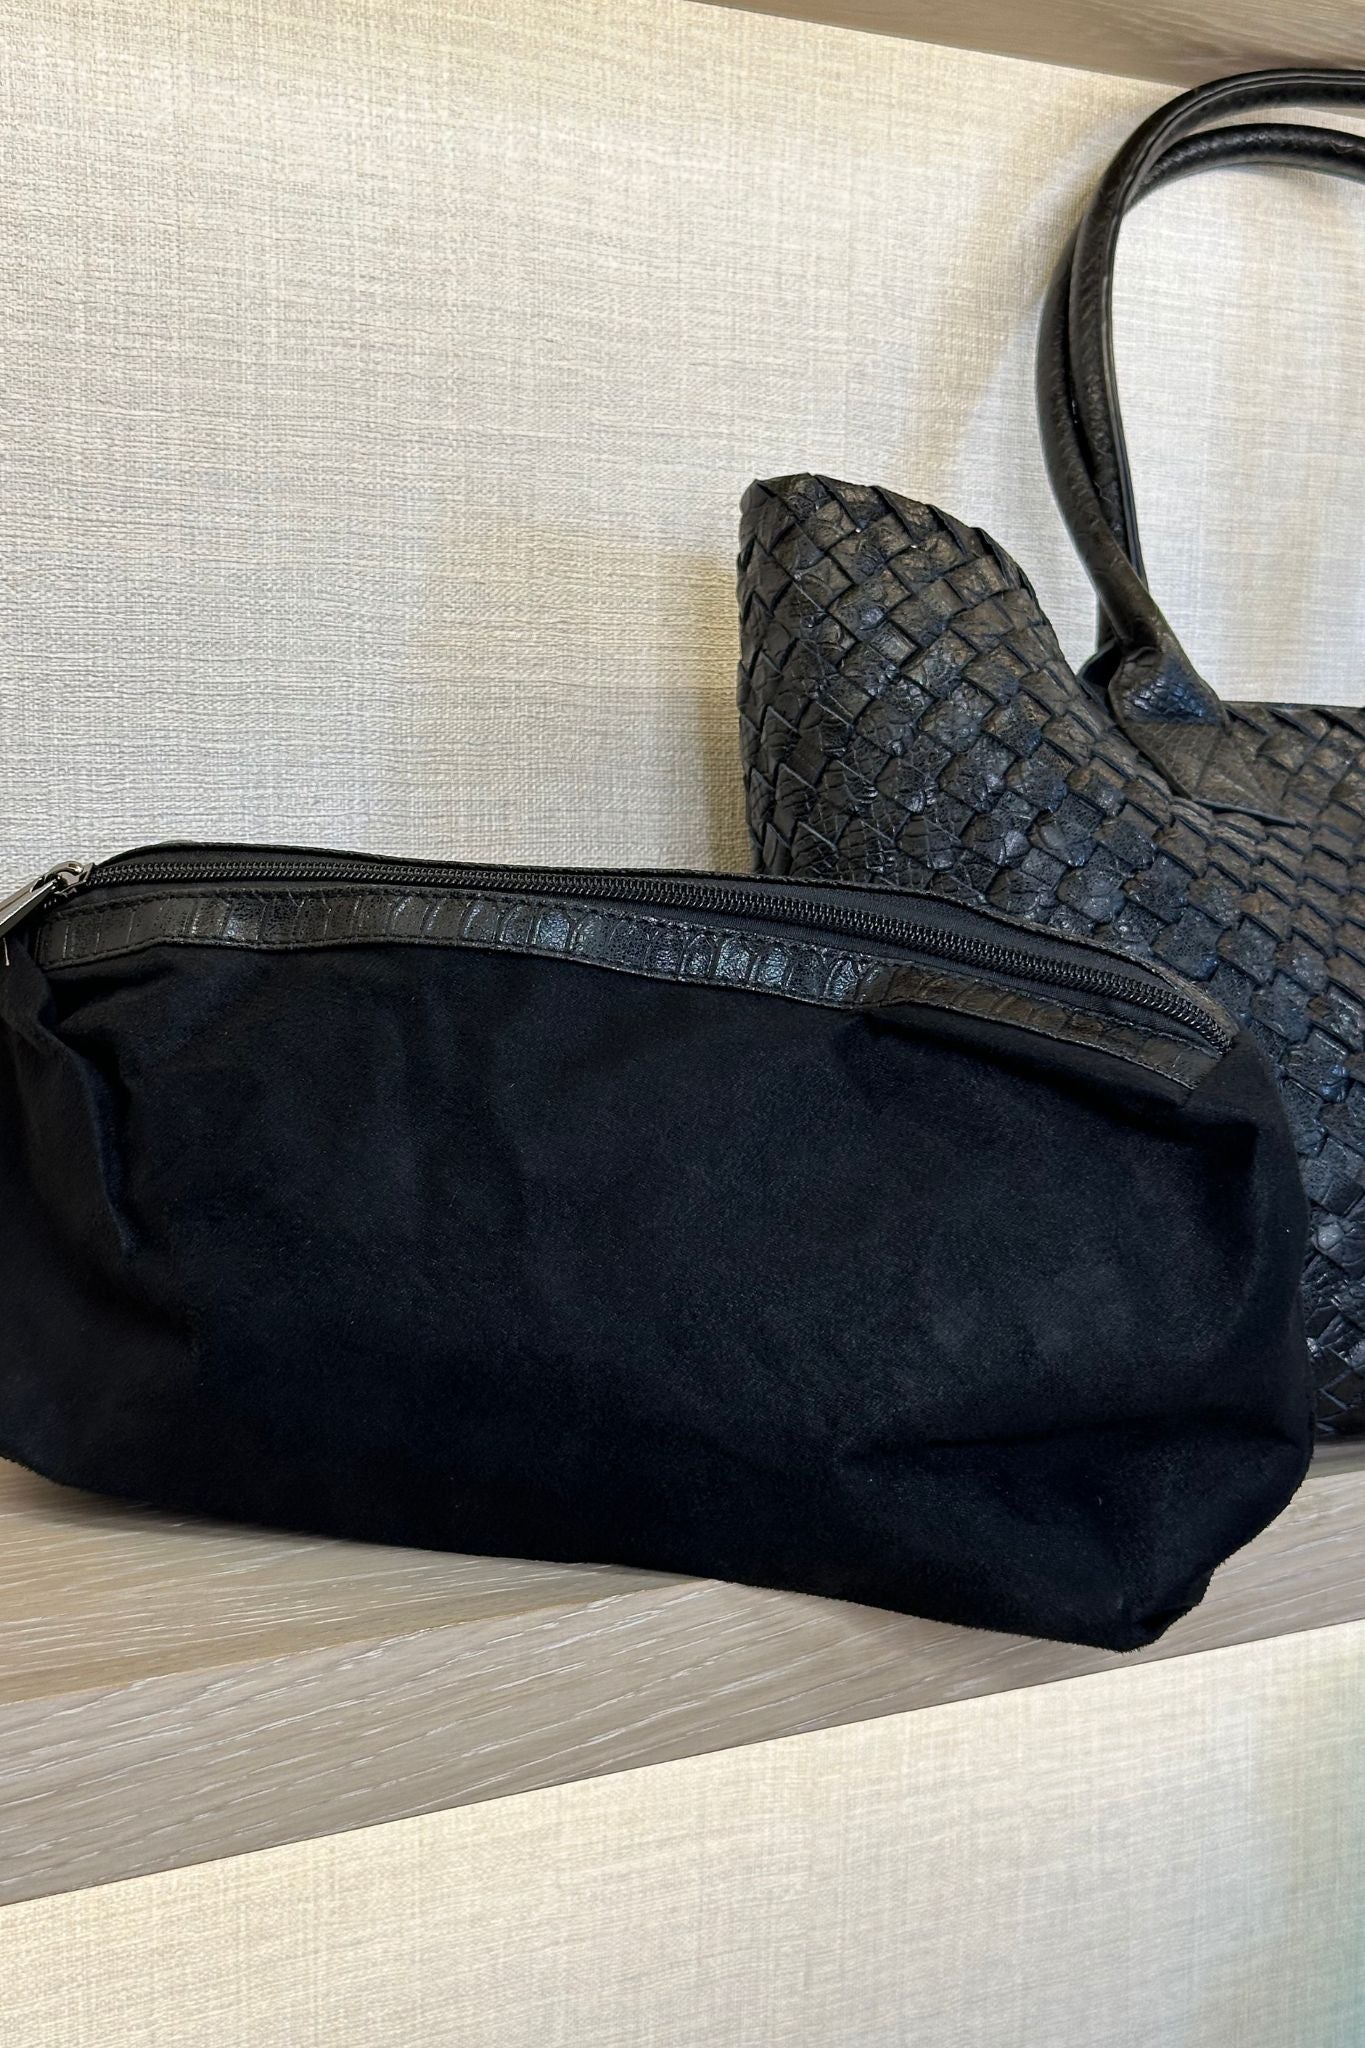 Beth Woven Tote Bag In Black - The Walk in Wardrobe